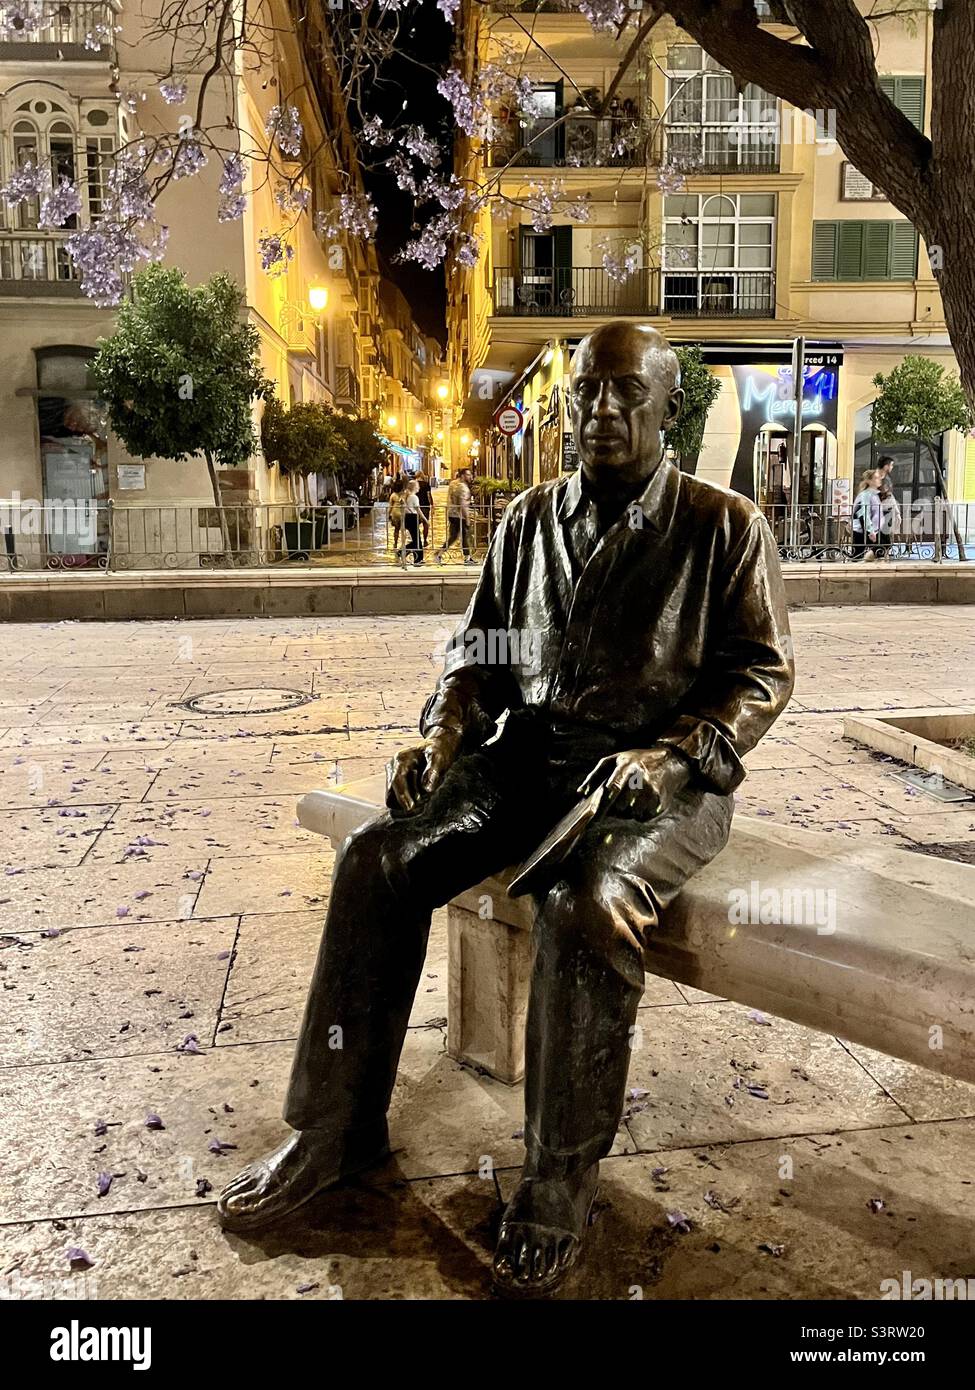 Sculpture of a man, Picasso, Plaza de la Merced, Malaga, Spain Stock Photo